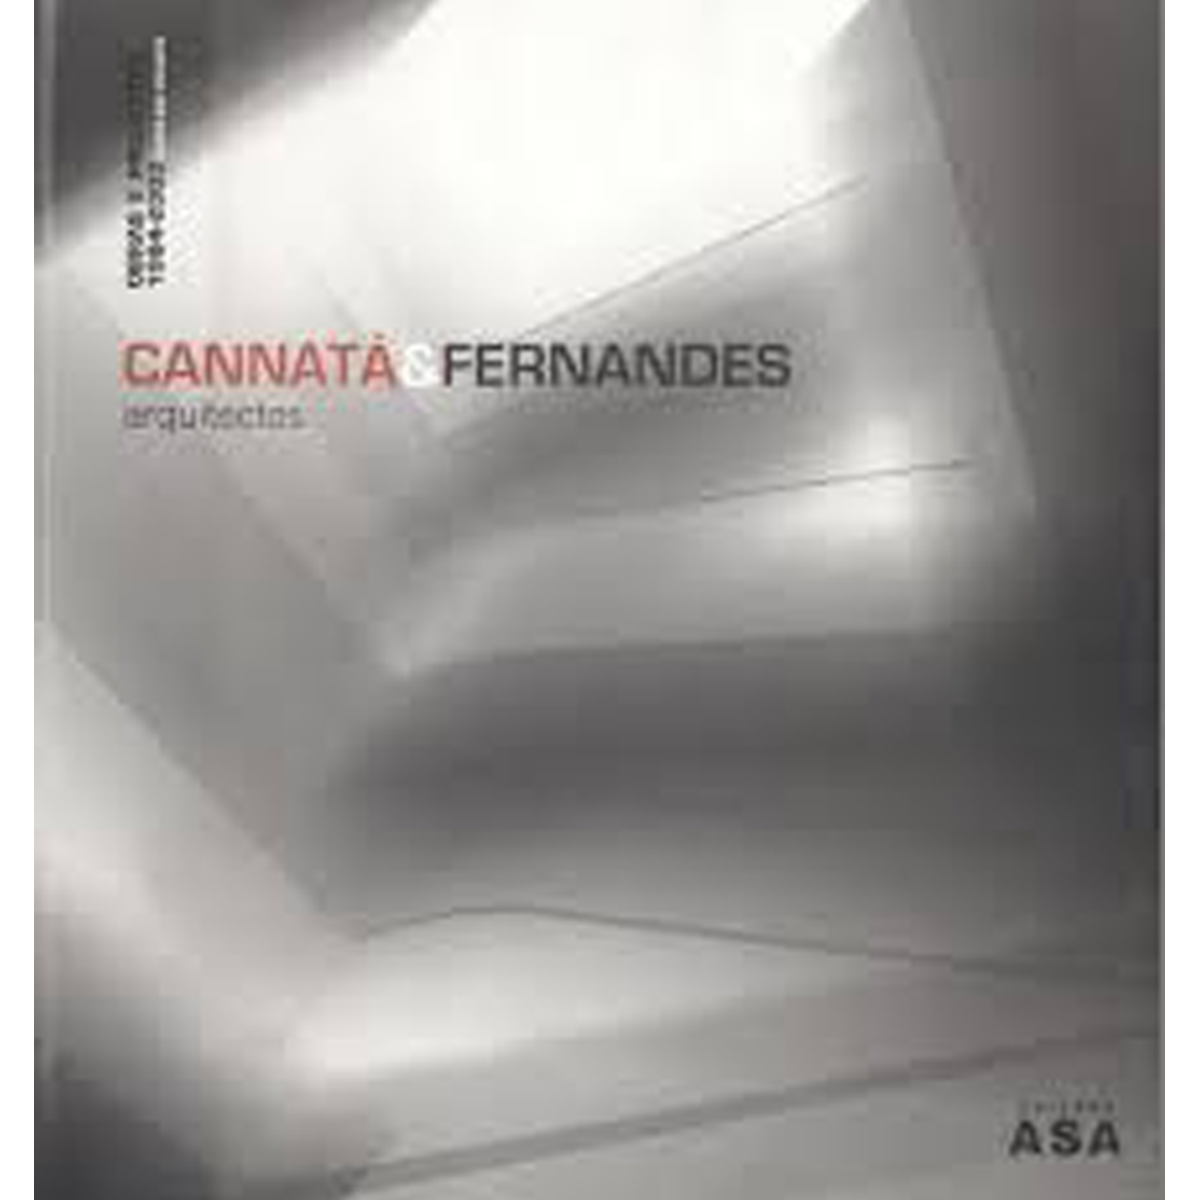 Cannatà & Fernandes Arquitectos